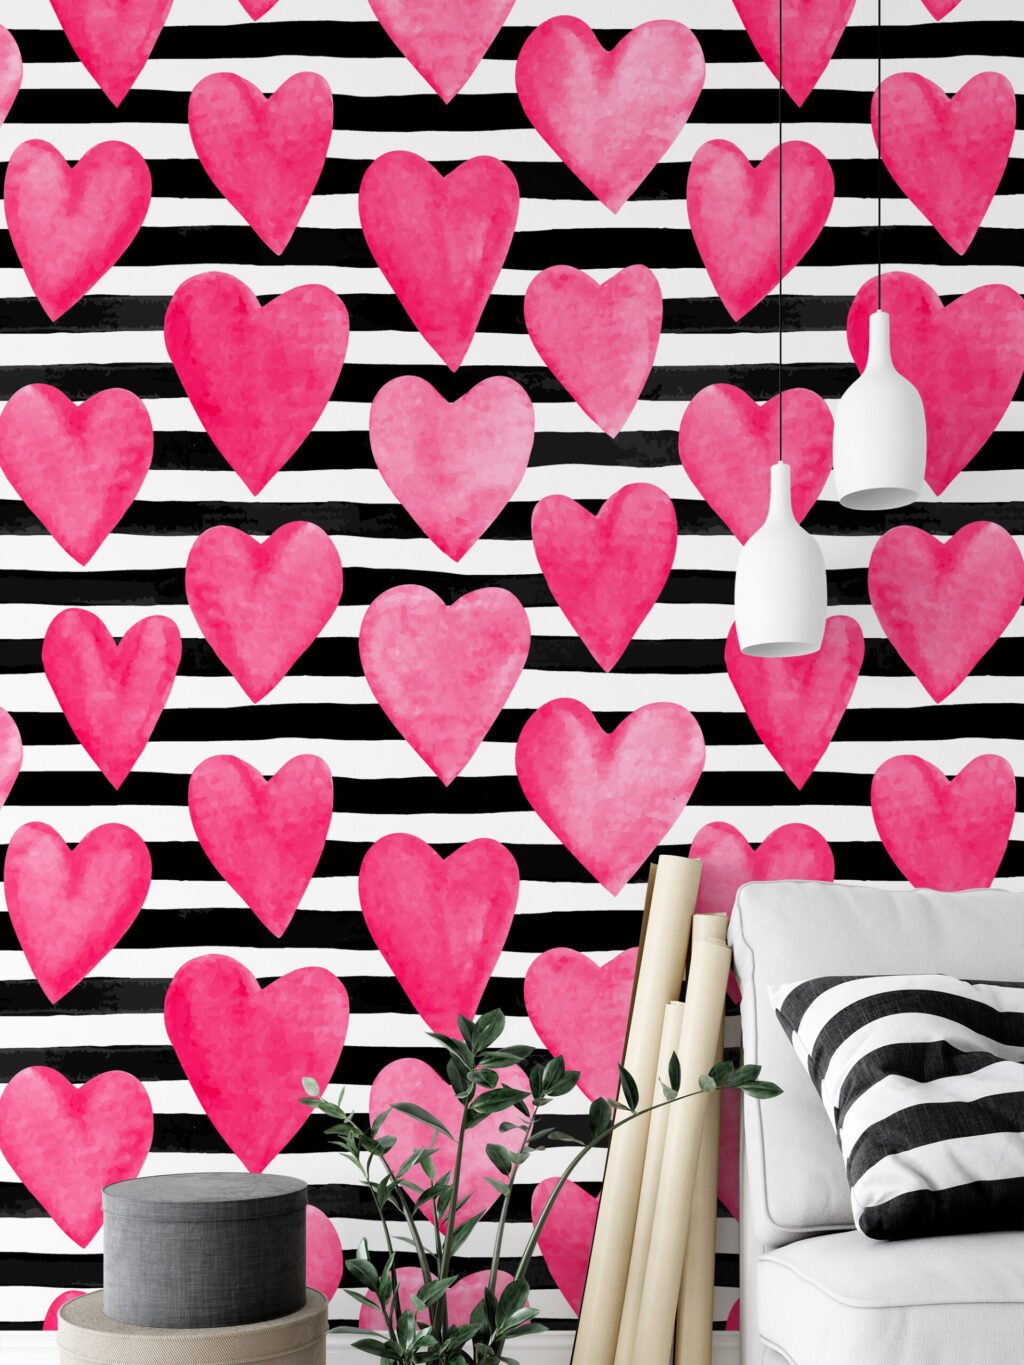 Sulu Boya Tarzı Pembe Kalpler Çizgi Desenli Duvar Kağıdı, Pembe Kalpler 3D Duvar Posteri Çocuk Odası Duvar Kağıtları 3